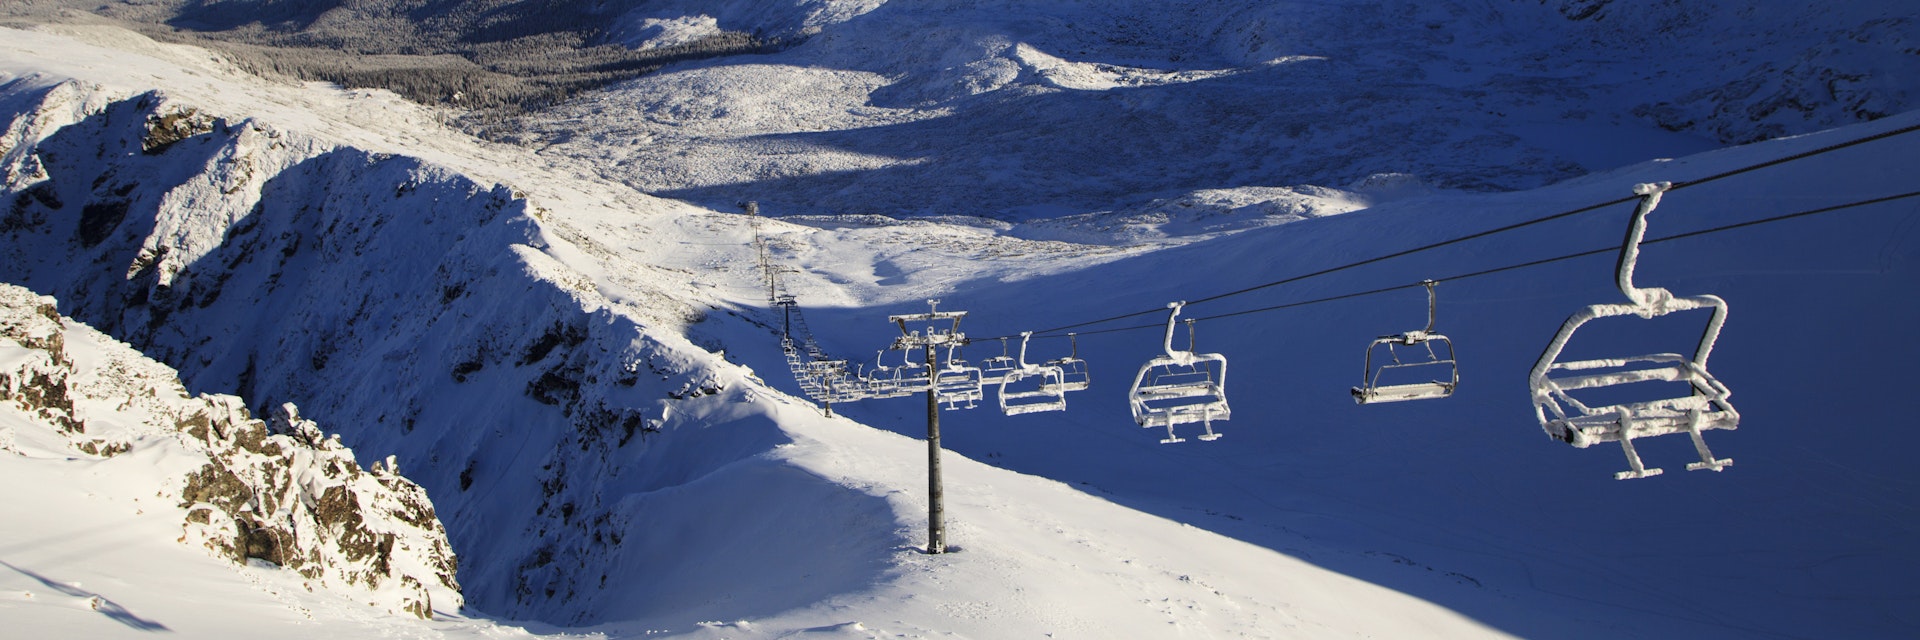 Ski chairs at Zakopane